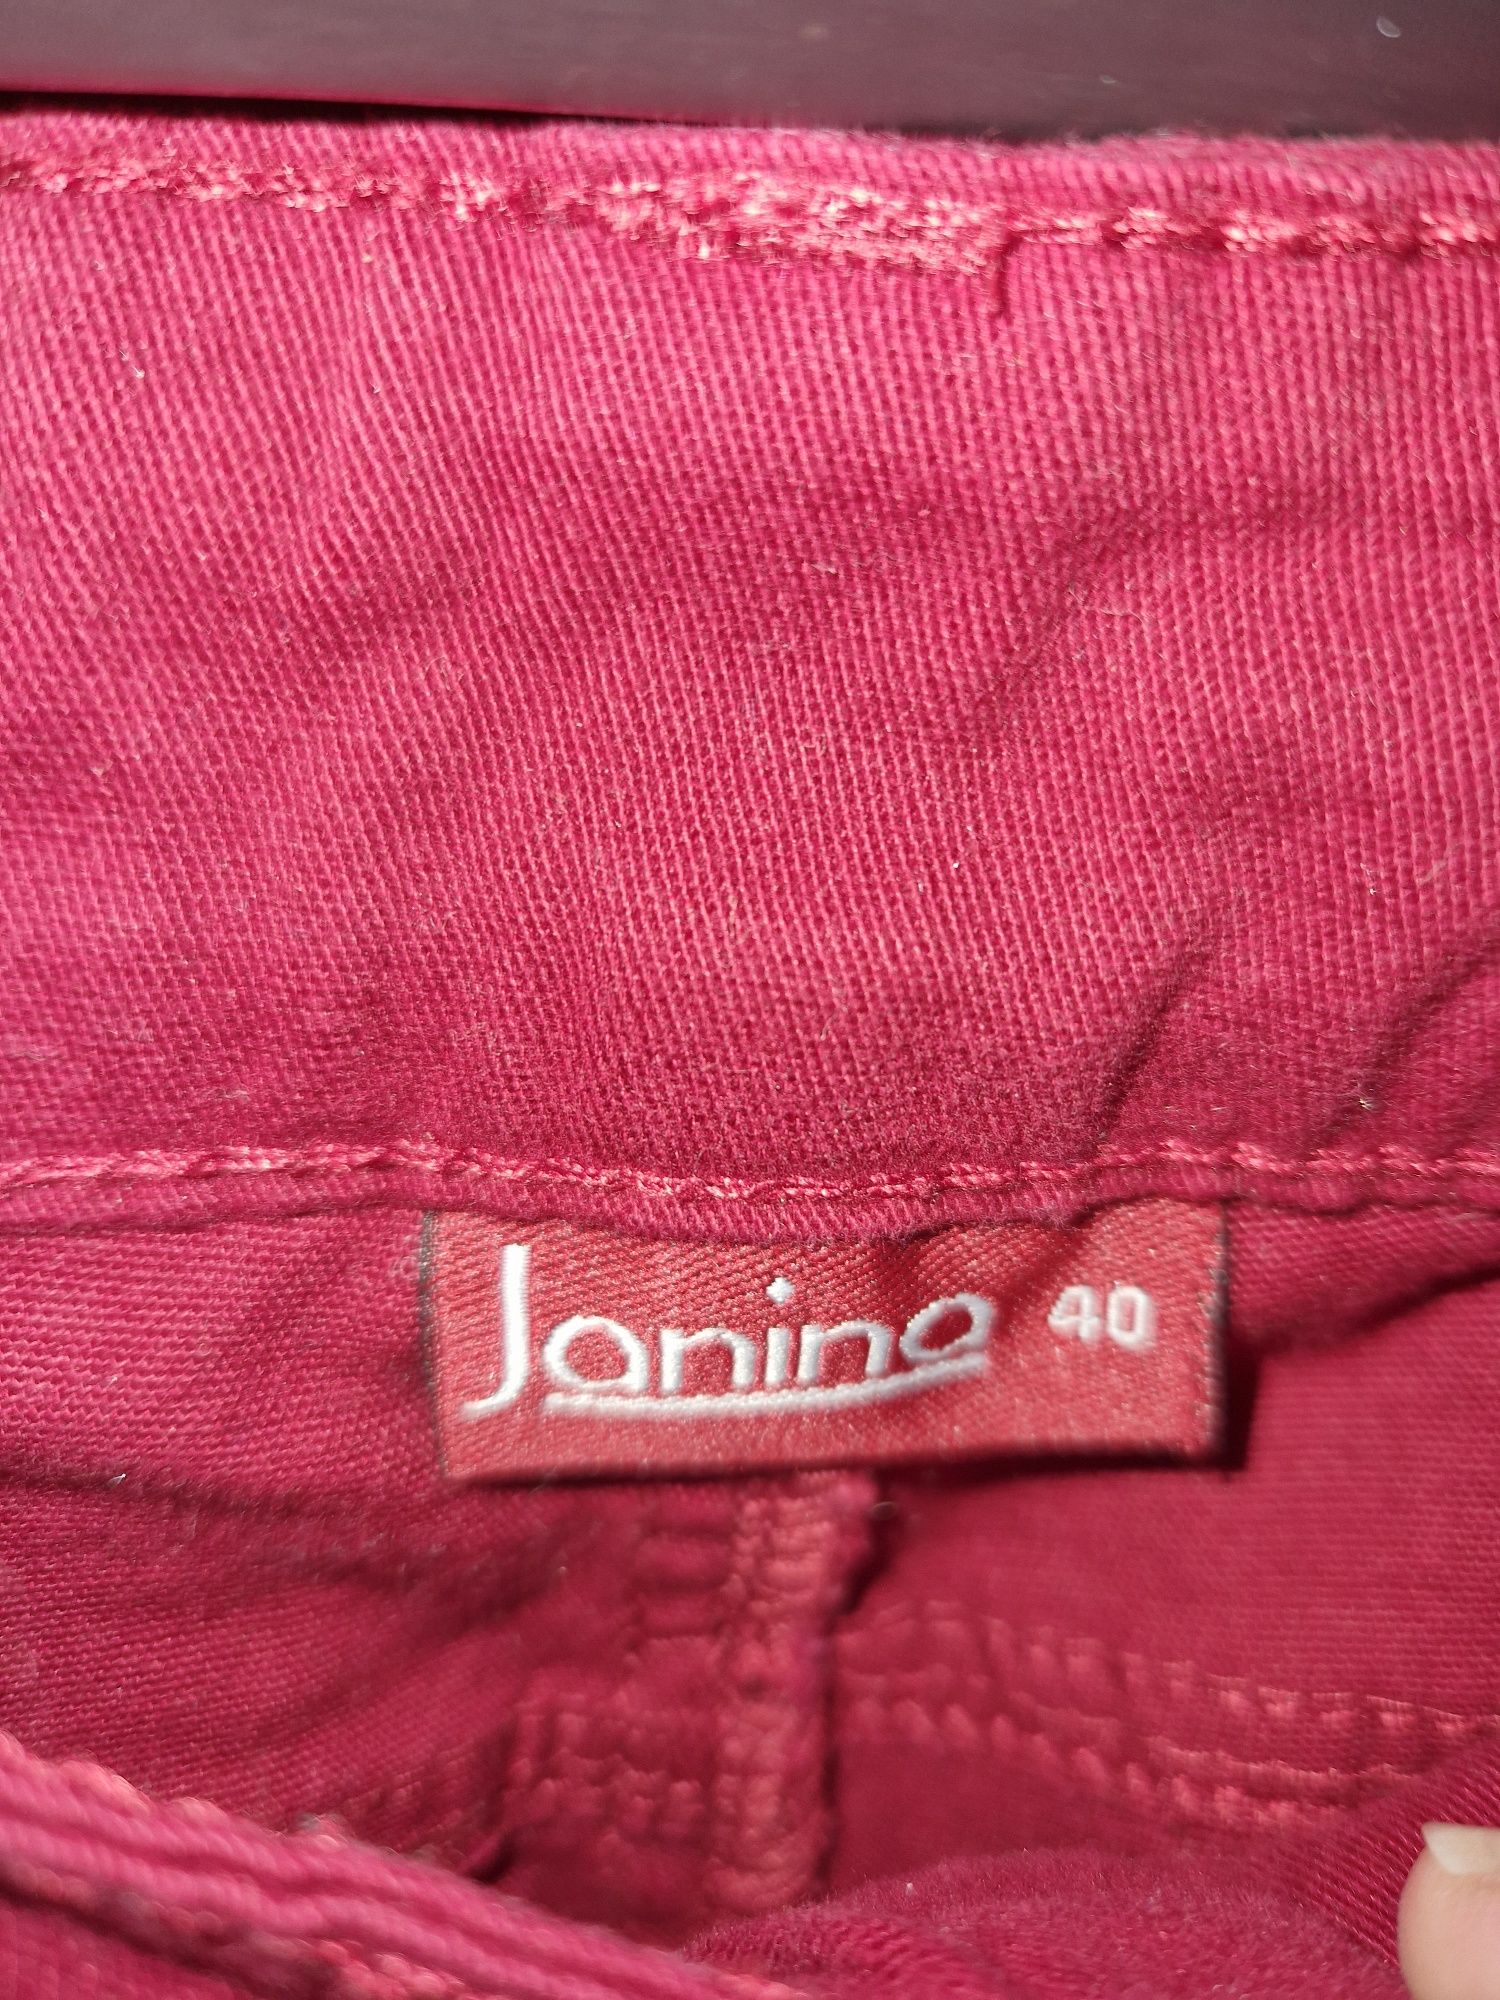 Spodnie damskie jeansowe Janina czerwone r. 40